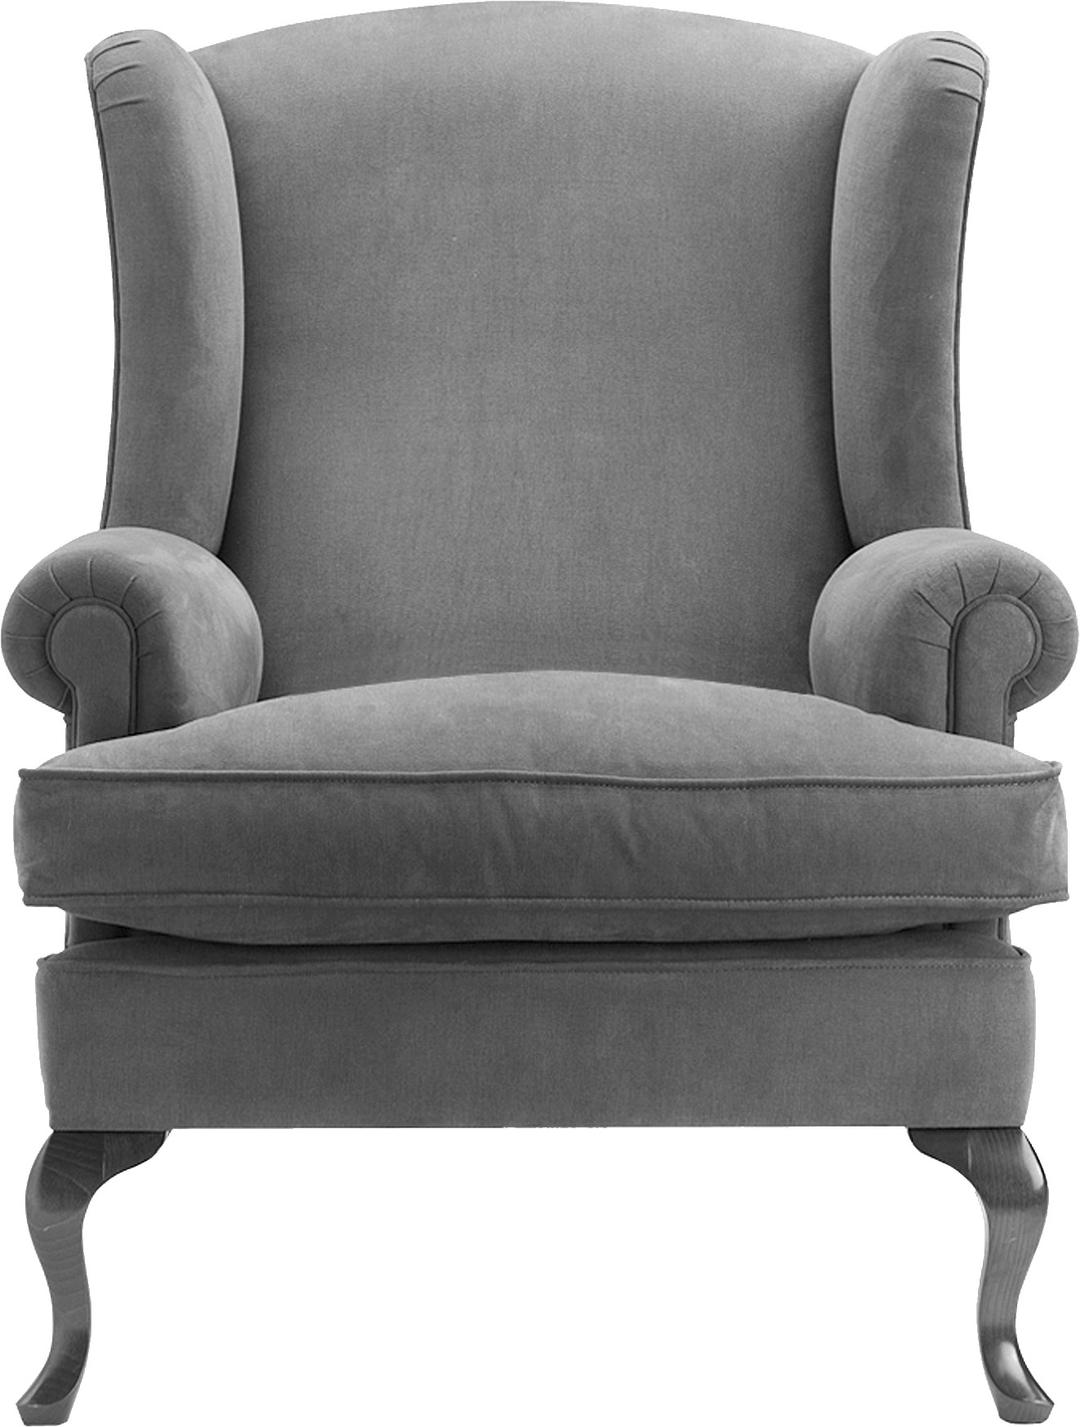 Grey Armchair png transparent